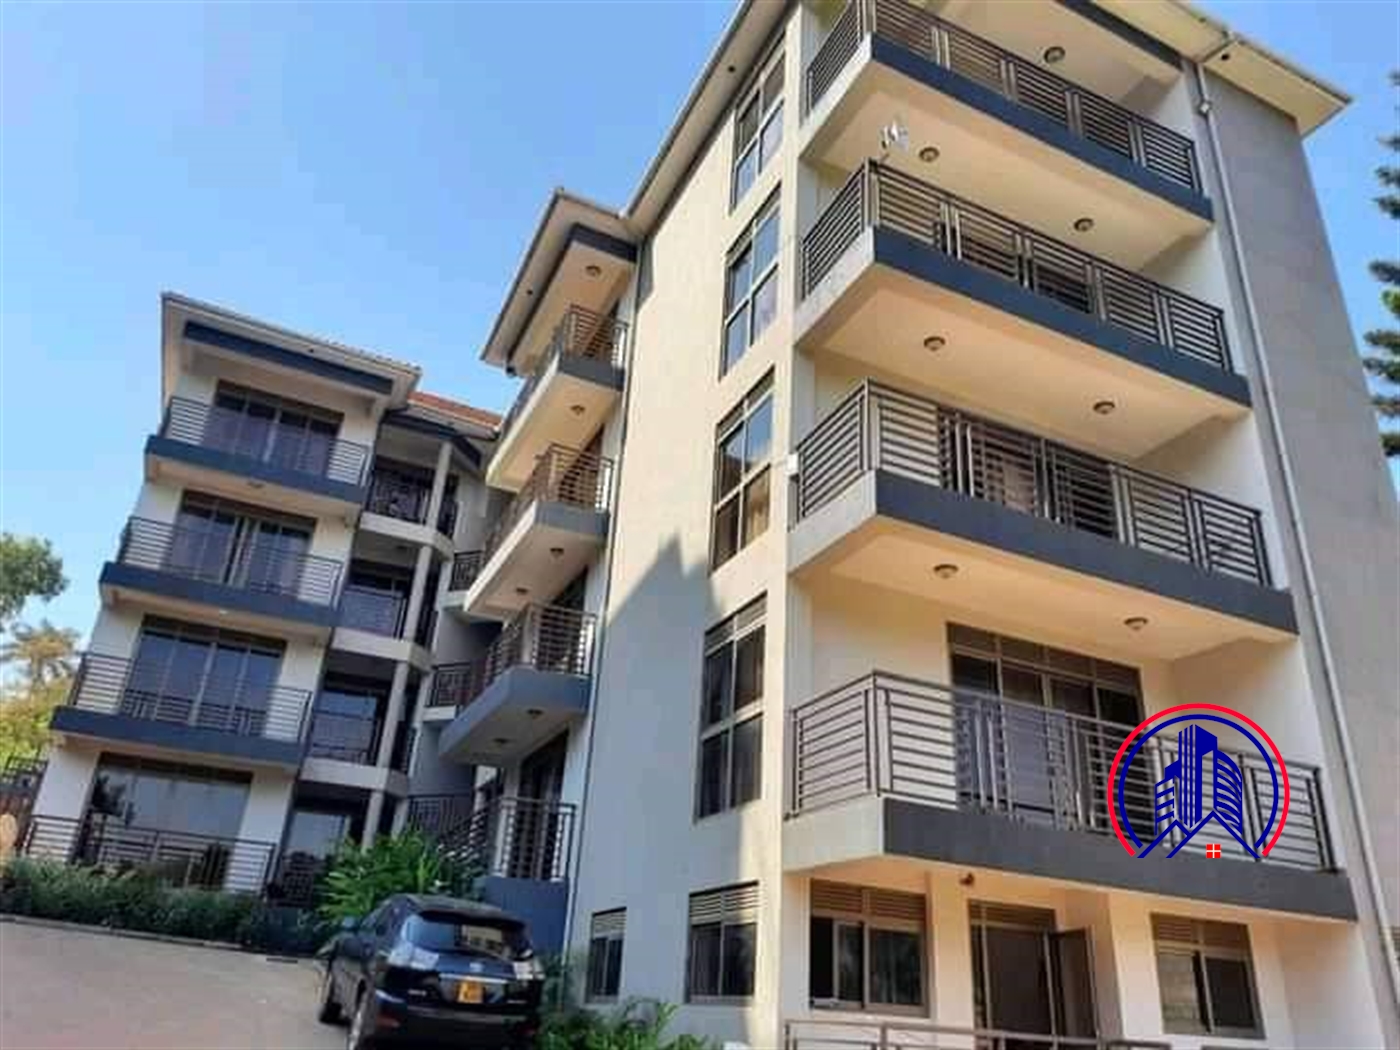 2 Bedroom Apartment For Rent In Naguru Kampala Uganda Code 11 08 22